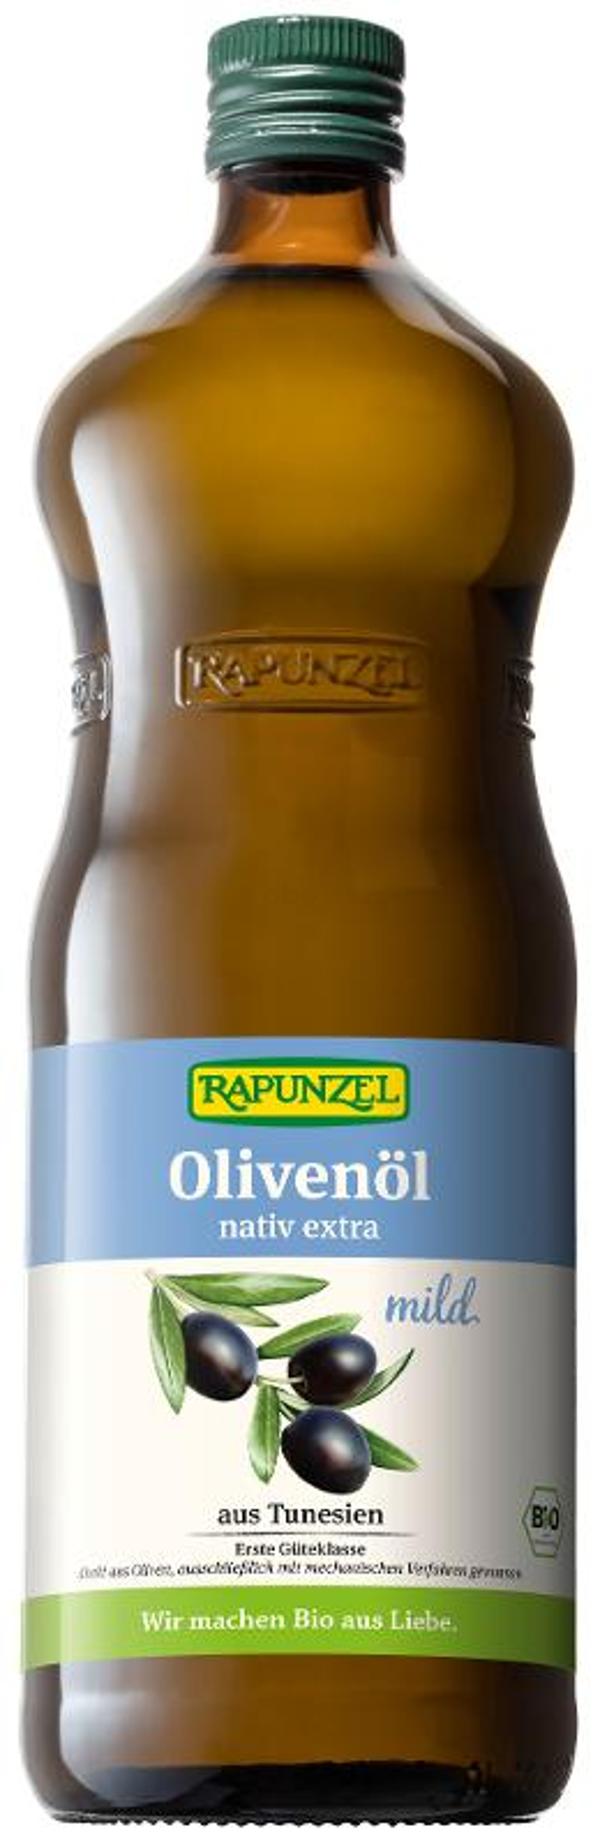 Produktfoto zu Olivenöl nativ extra mild, 1 l